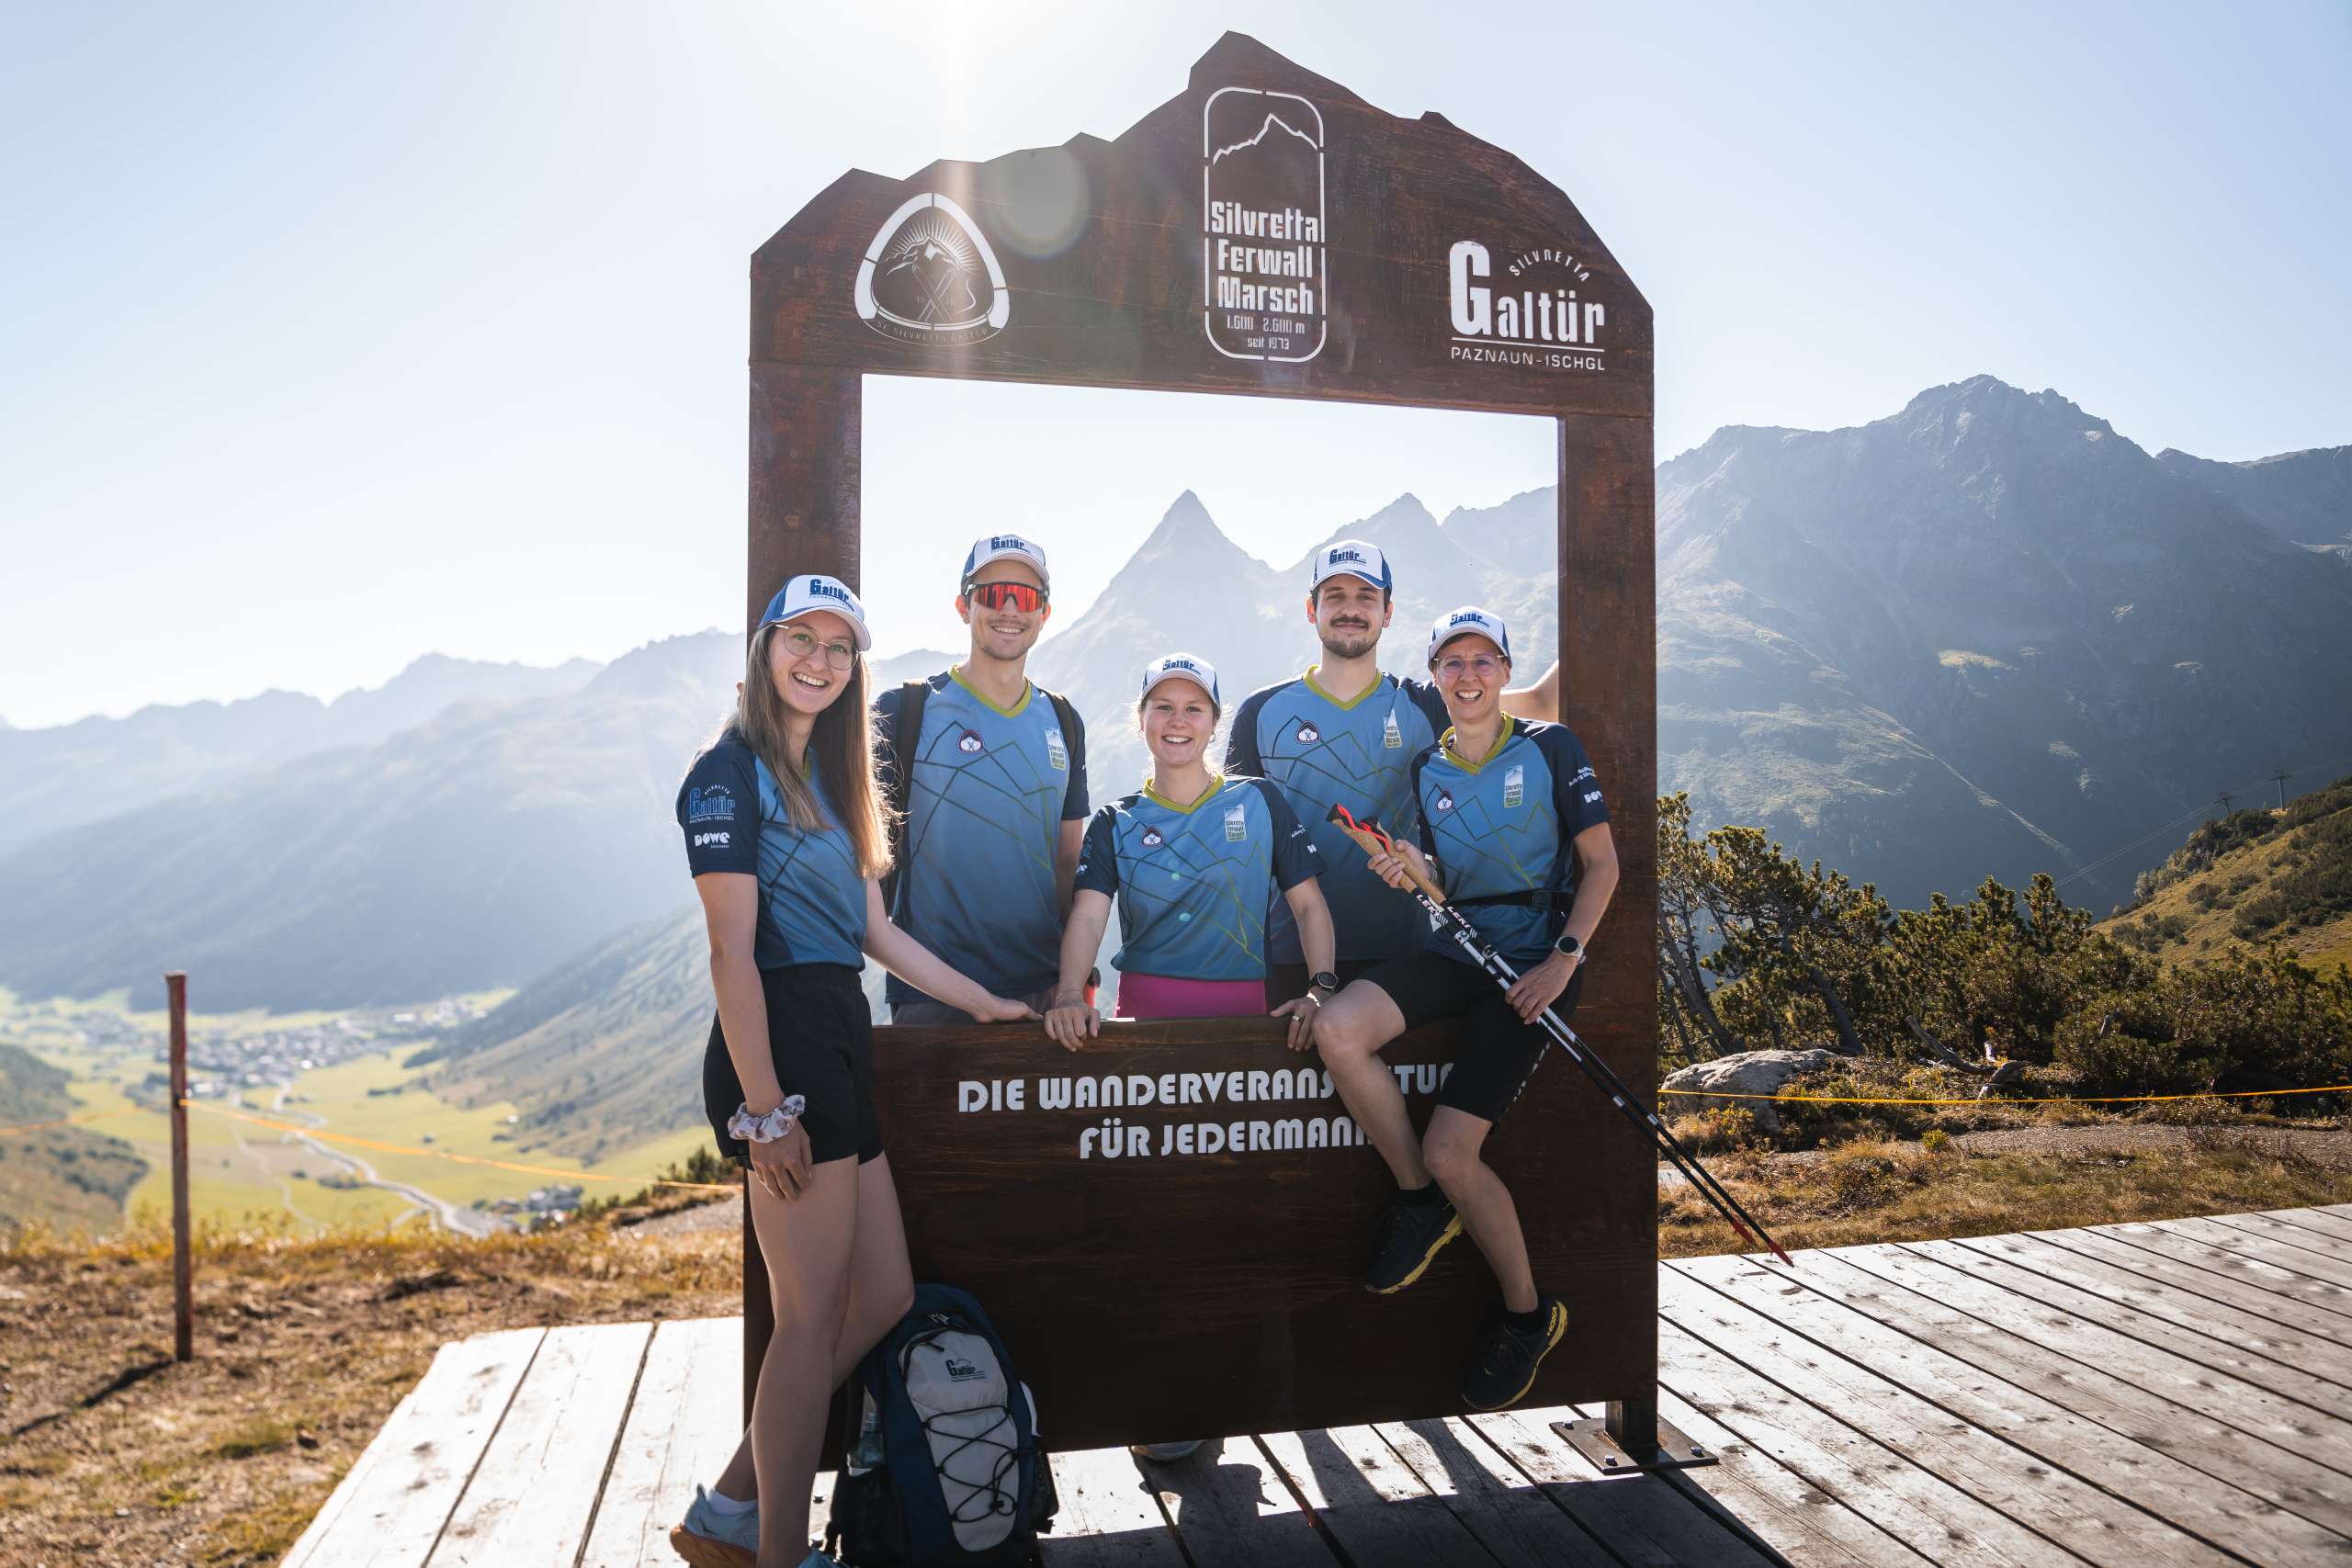 Fünf Athletinnen auf einer Bergspitze beim Posieren in blauen Sport-Shirts von DOWE